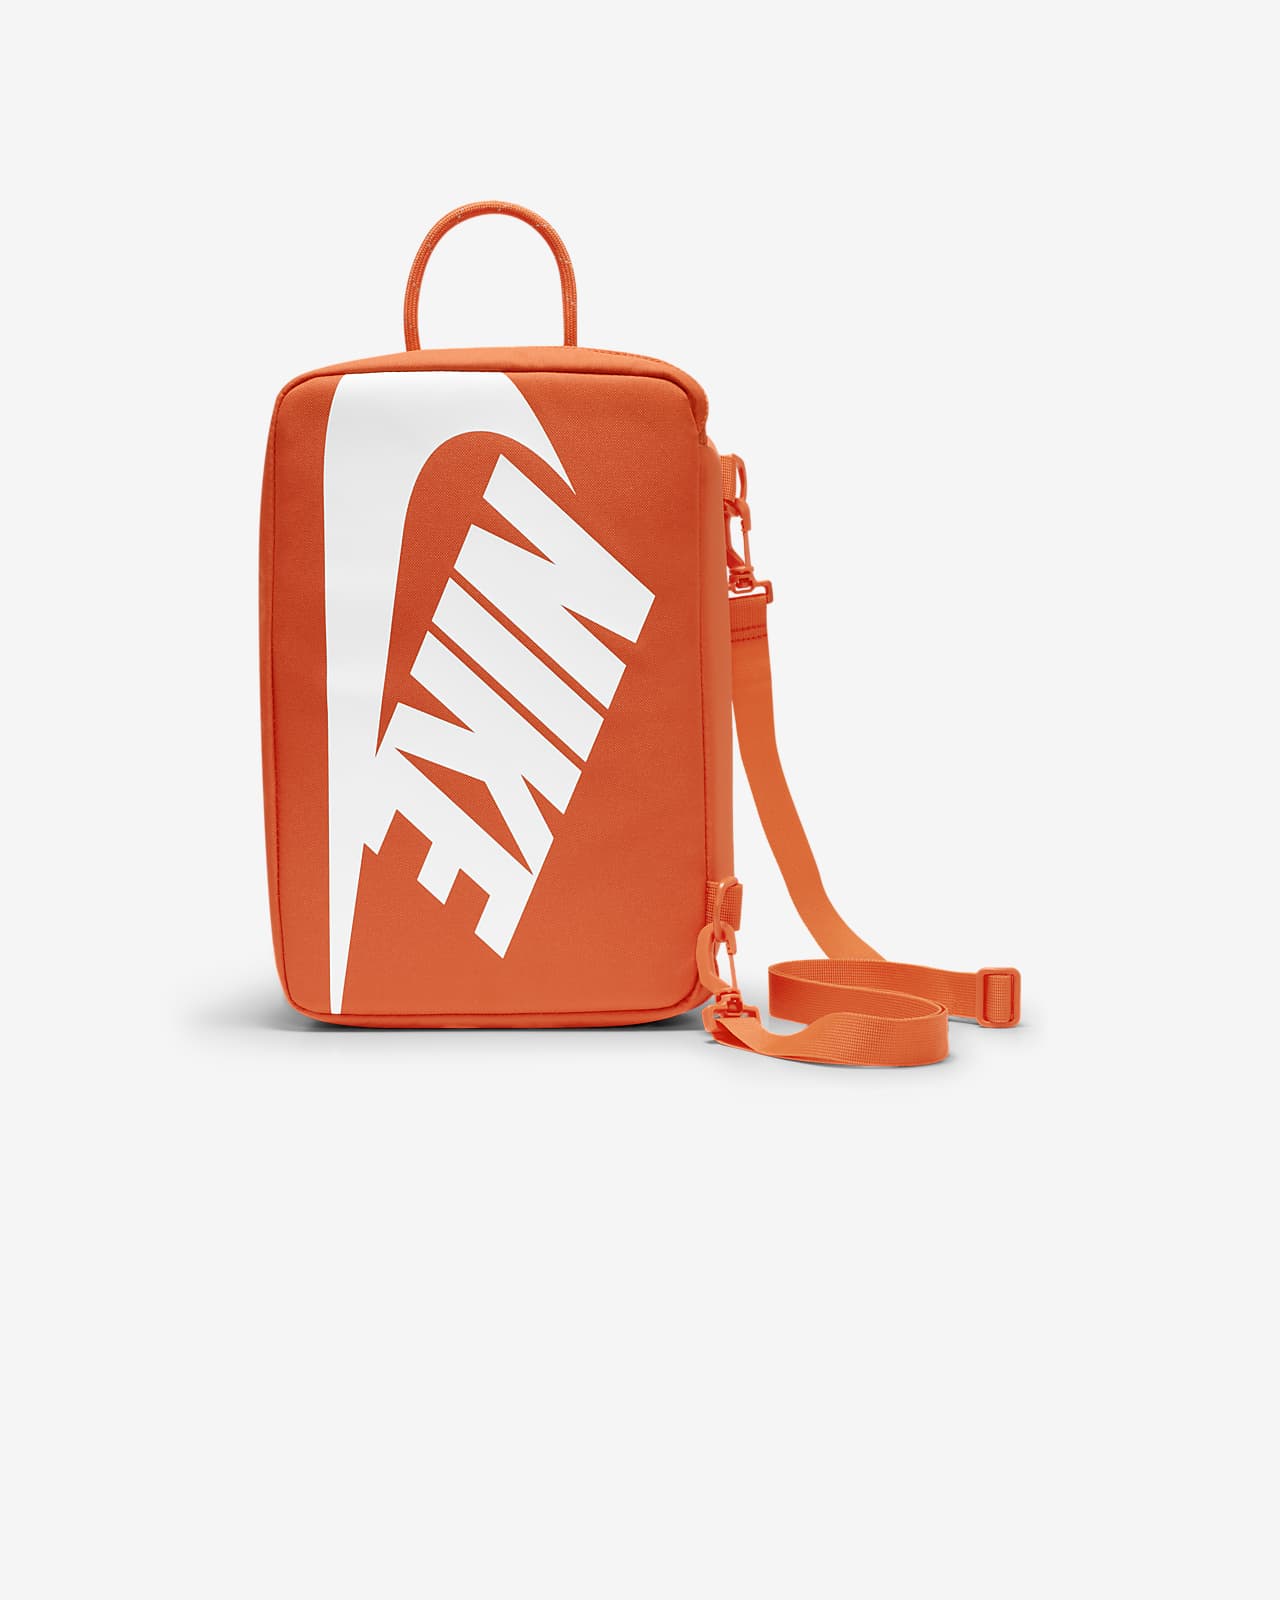 Nike Shoe Box Bag (12L). Nike VN